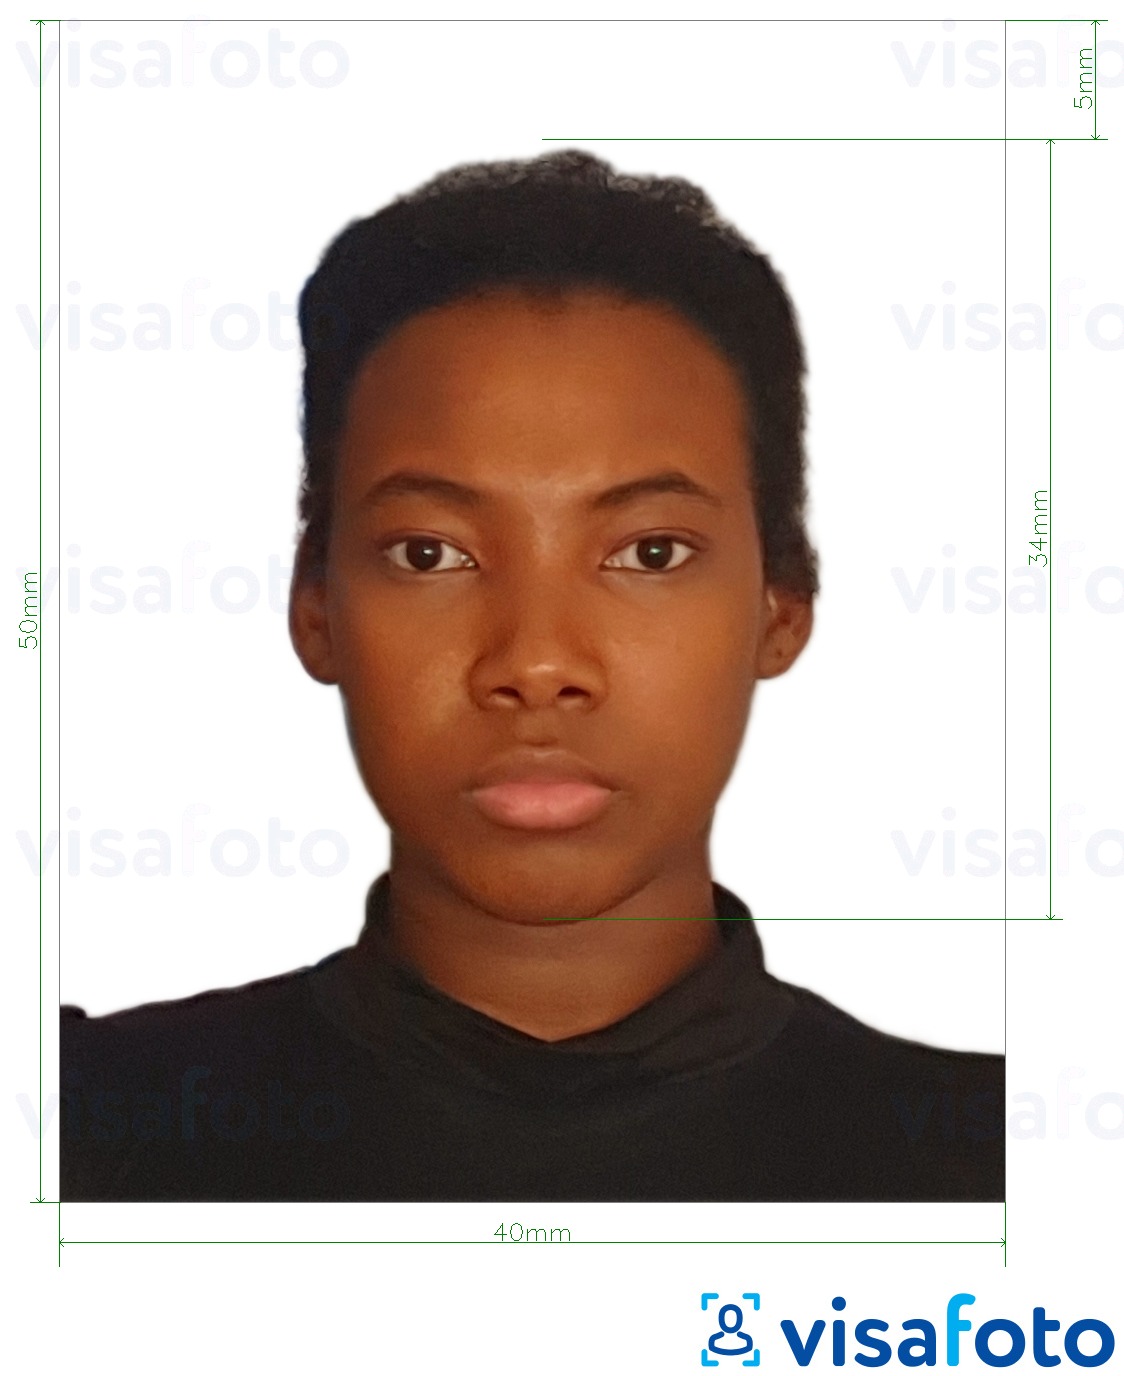 Példa a Dominikai Köztársaság vízum 4x5 cm fényképre pontos méret meghatározással